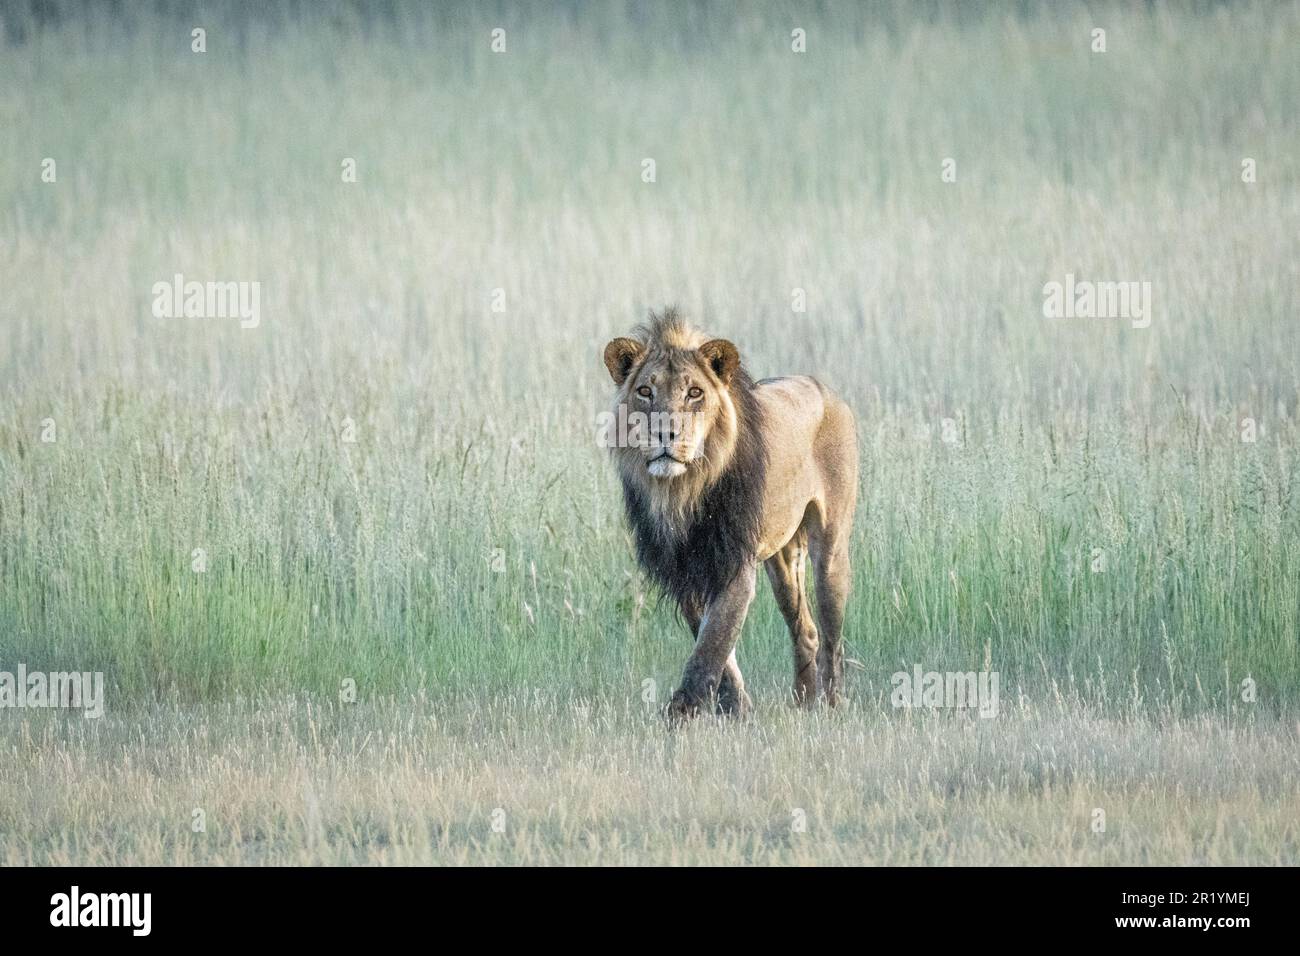 Lion walking in grass, black-maned lion, Kalahari, Kgalagadi Transfrontier Park, South Africa Stock Photo